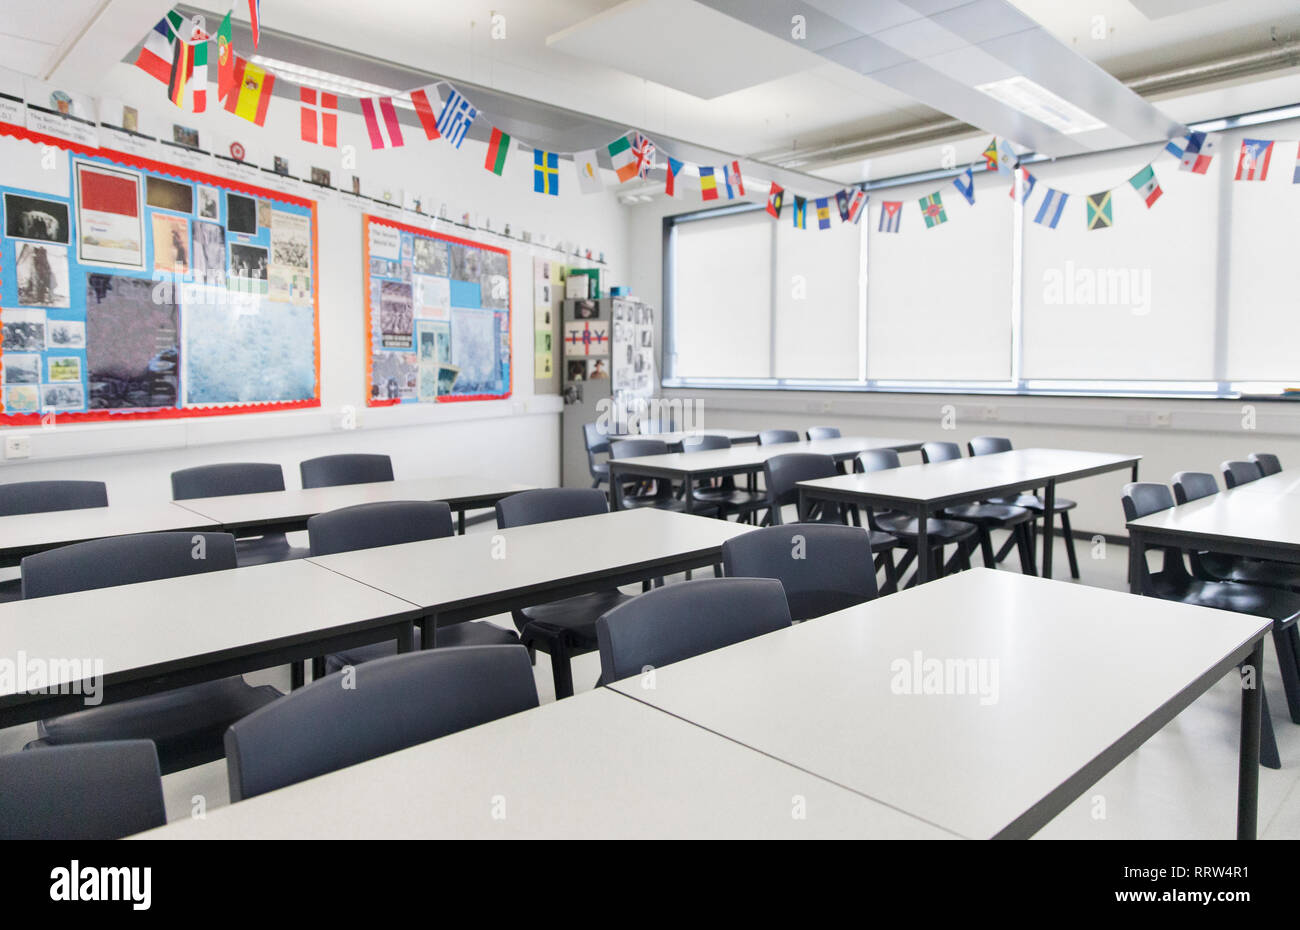 Internationale Flaggen über Schreibtische im Klassenzimmer aufhängen Stockfoto